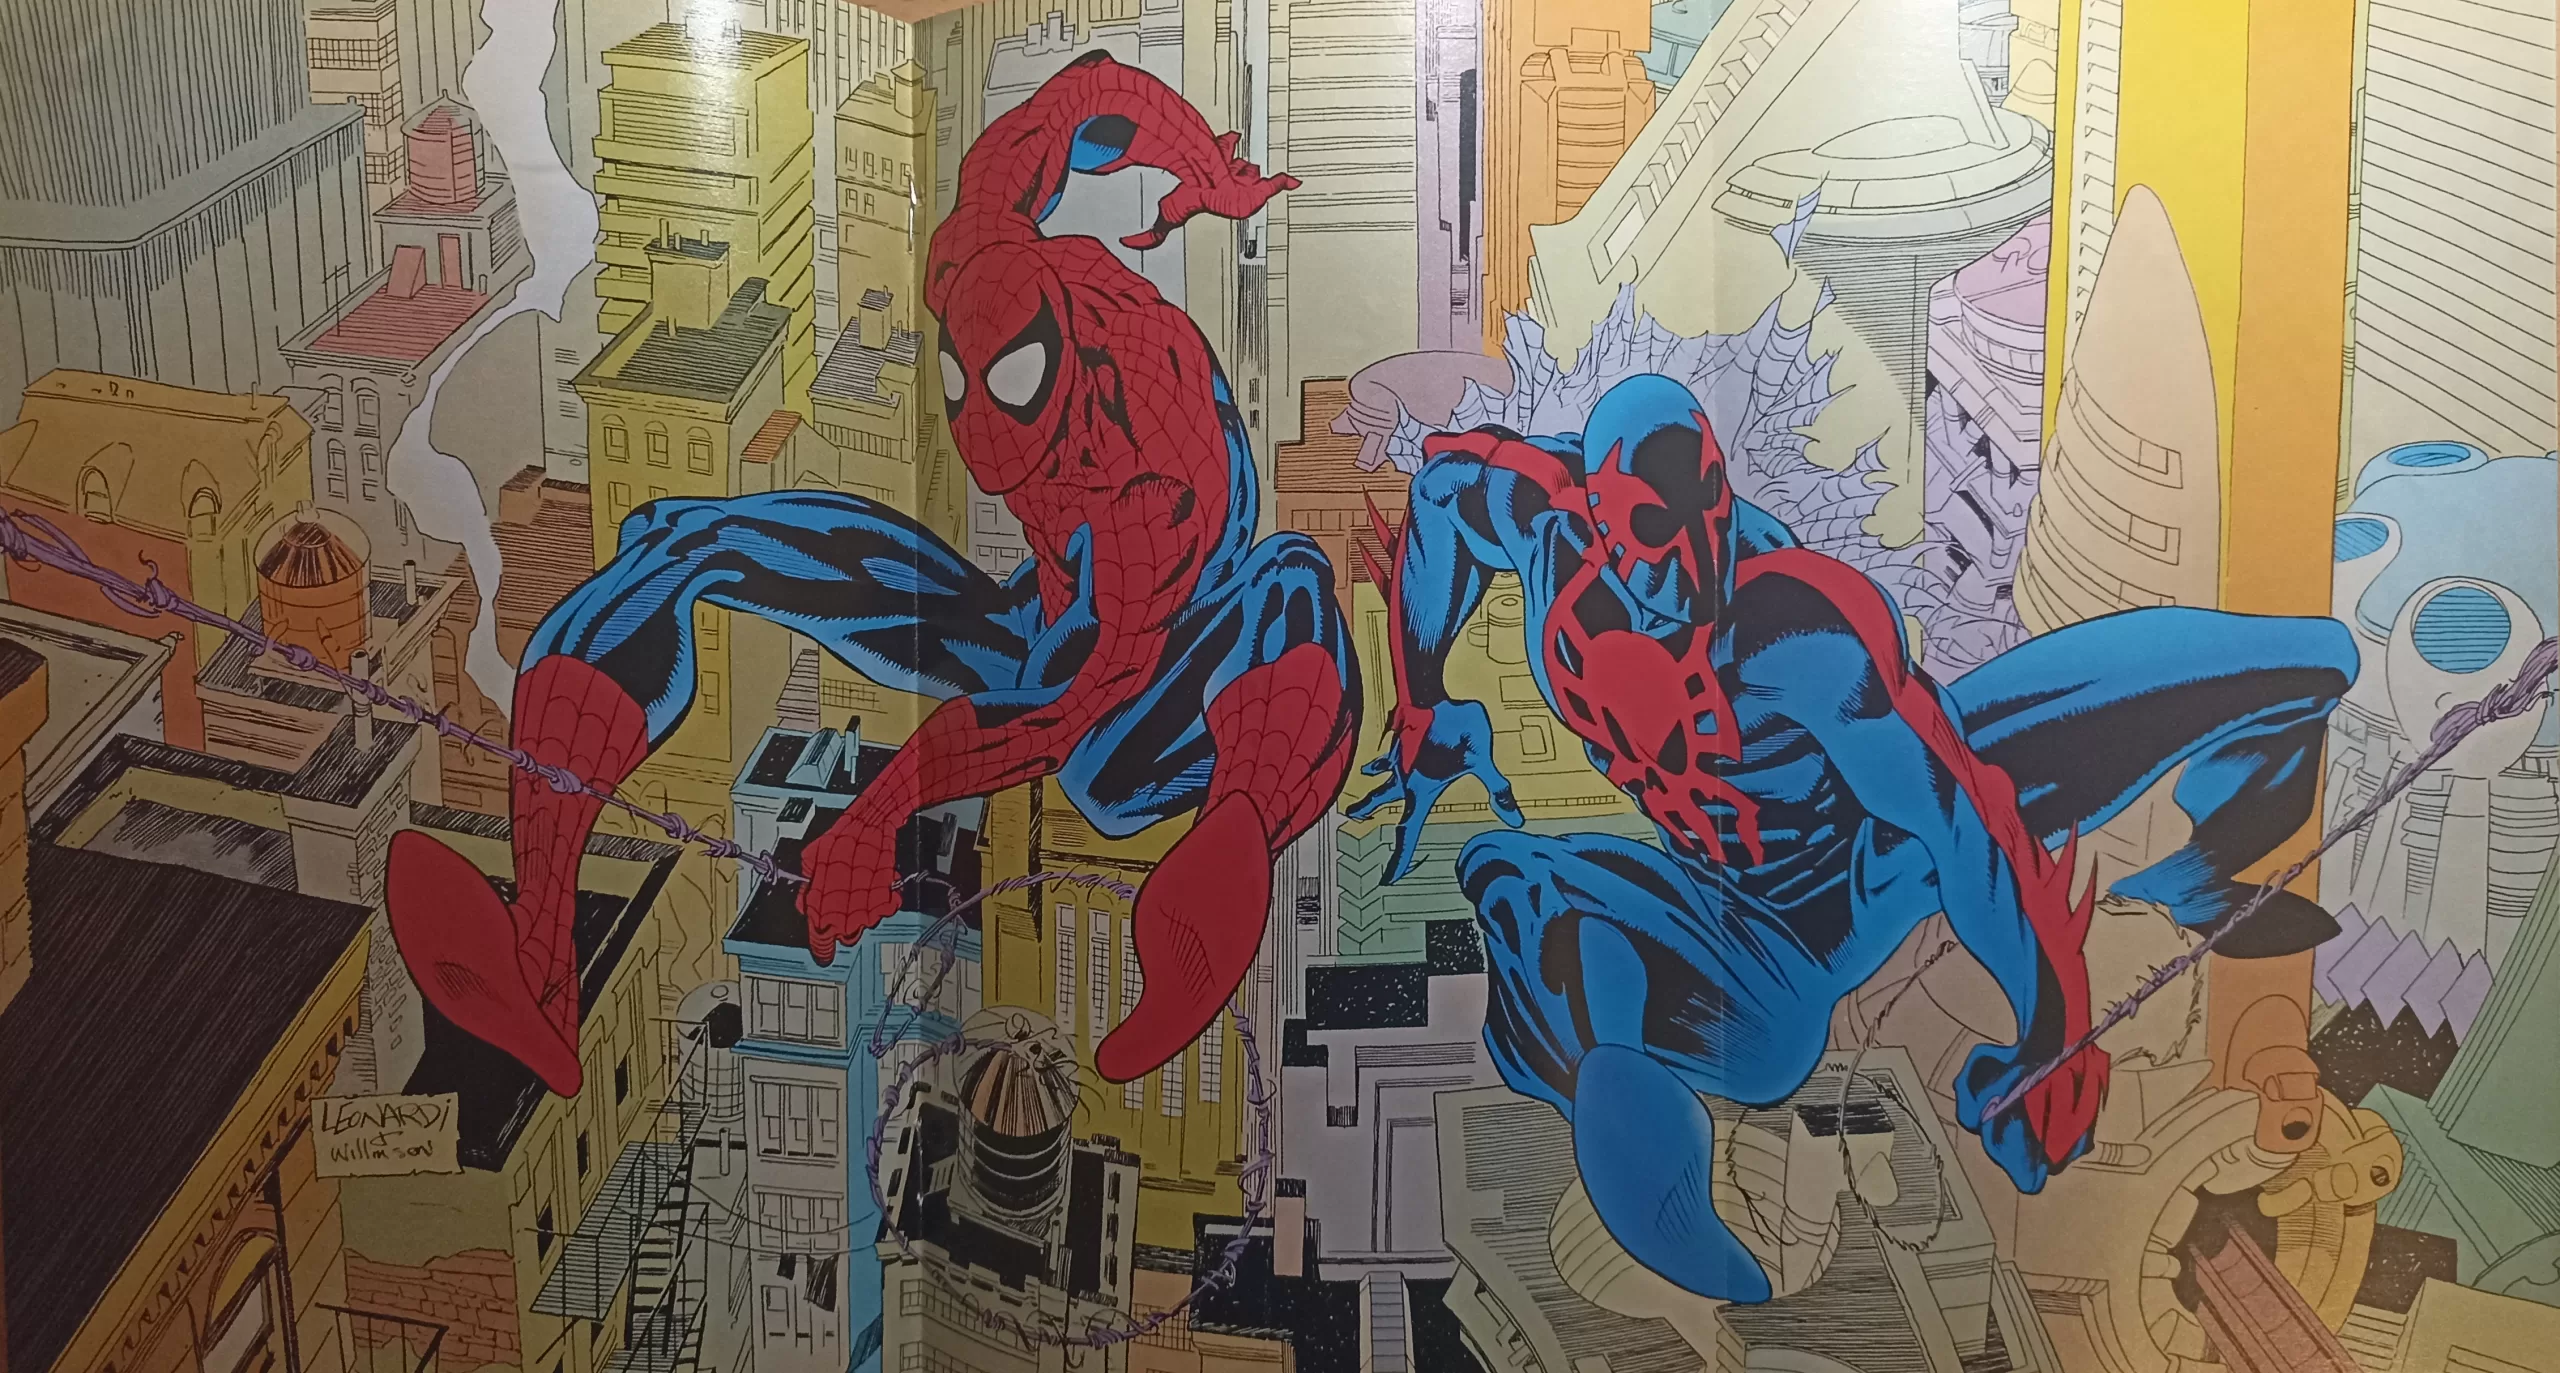 Spider-Man 1992 and Spider-Man 2099